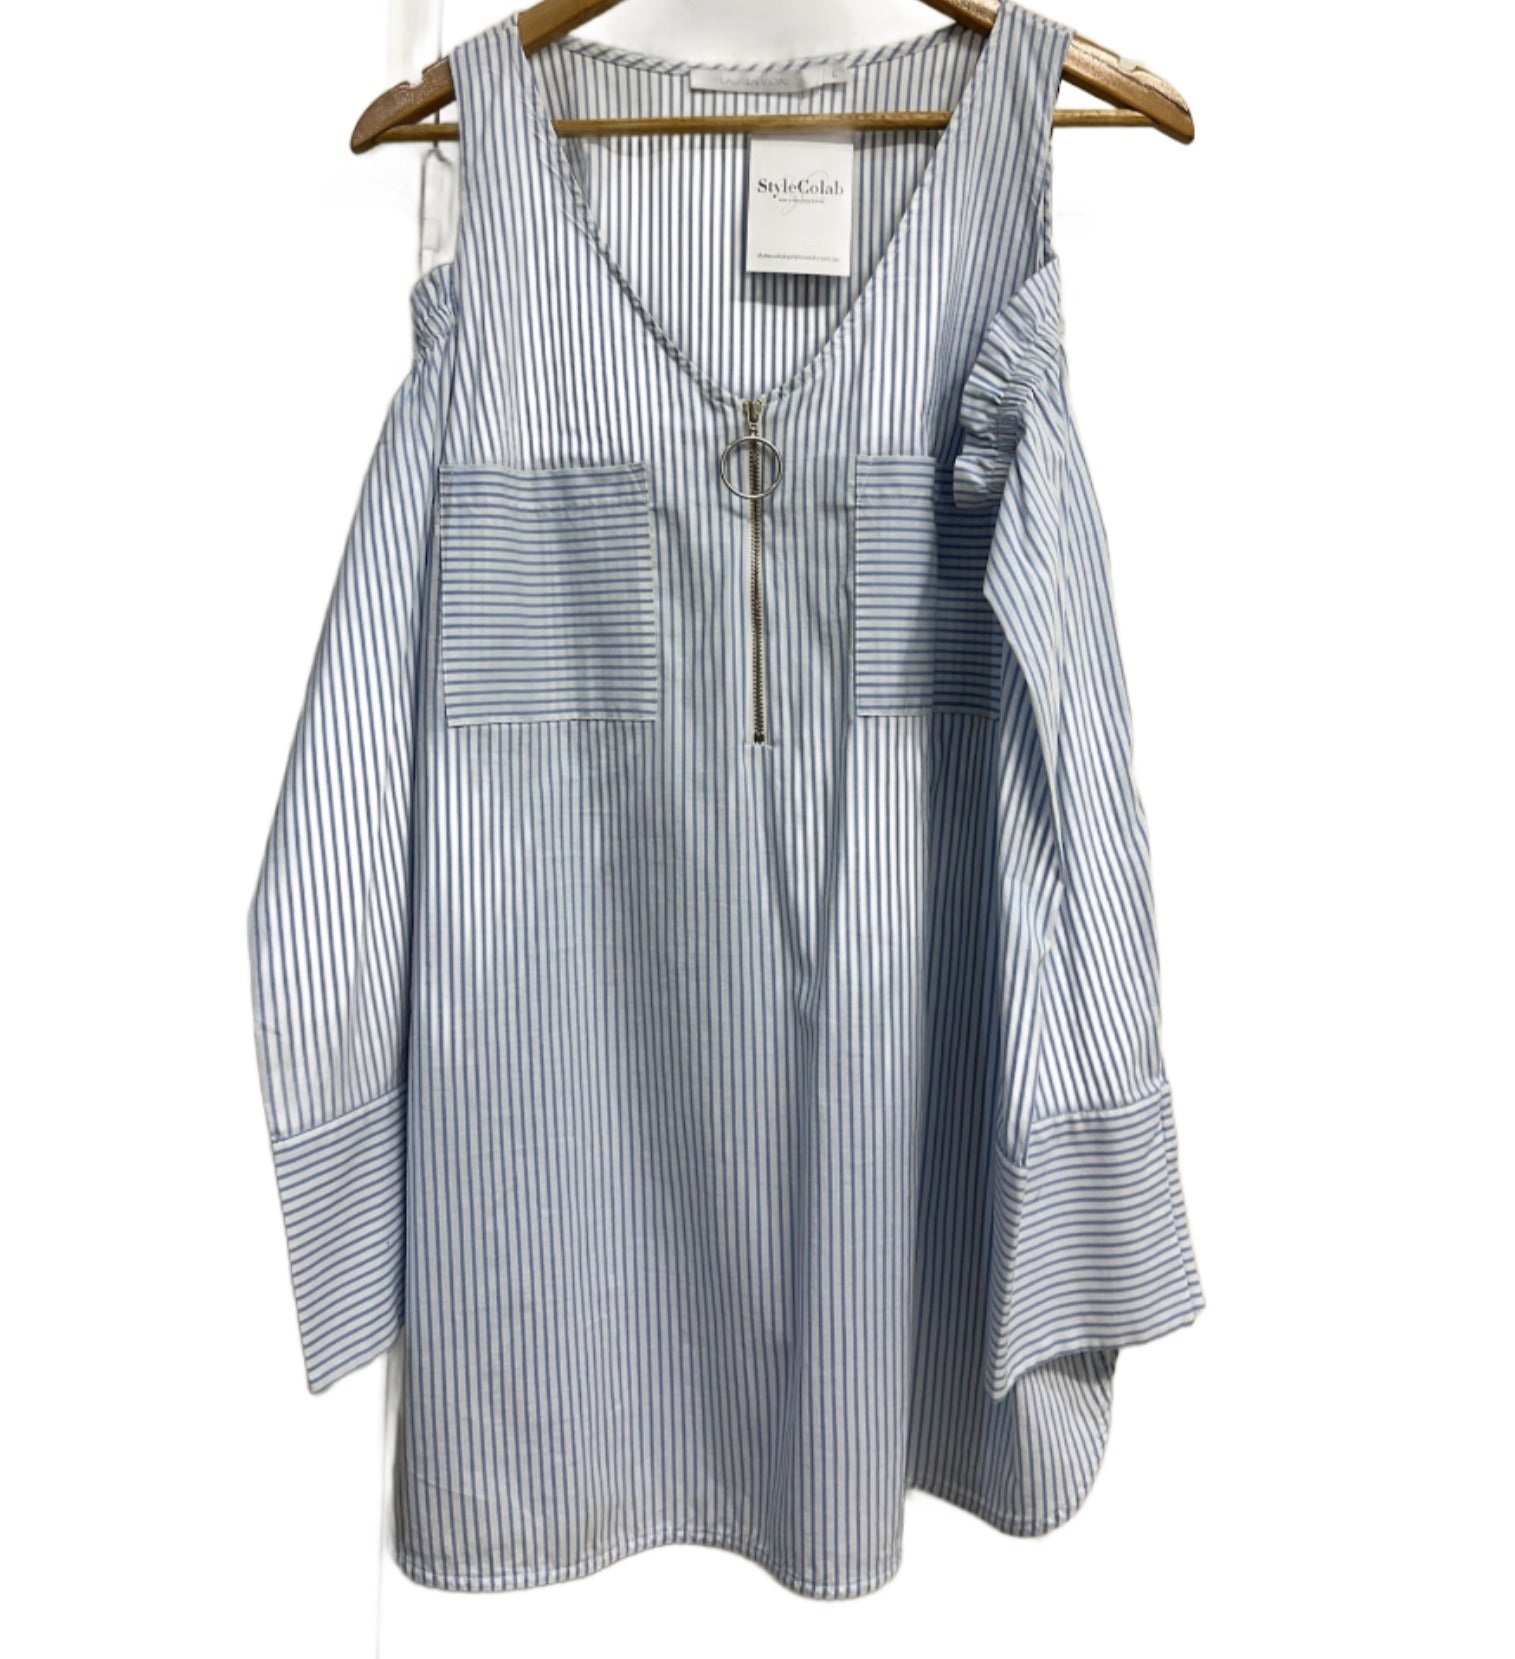 Lauren Vidal Blue & White Striped Shirt